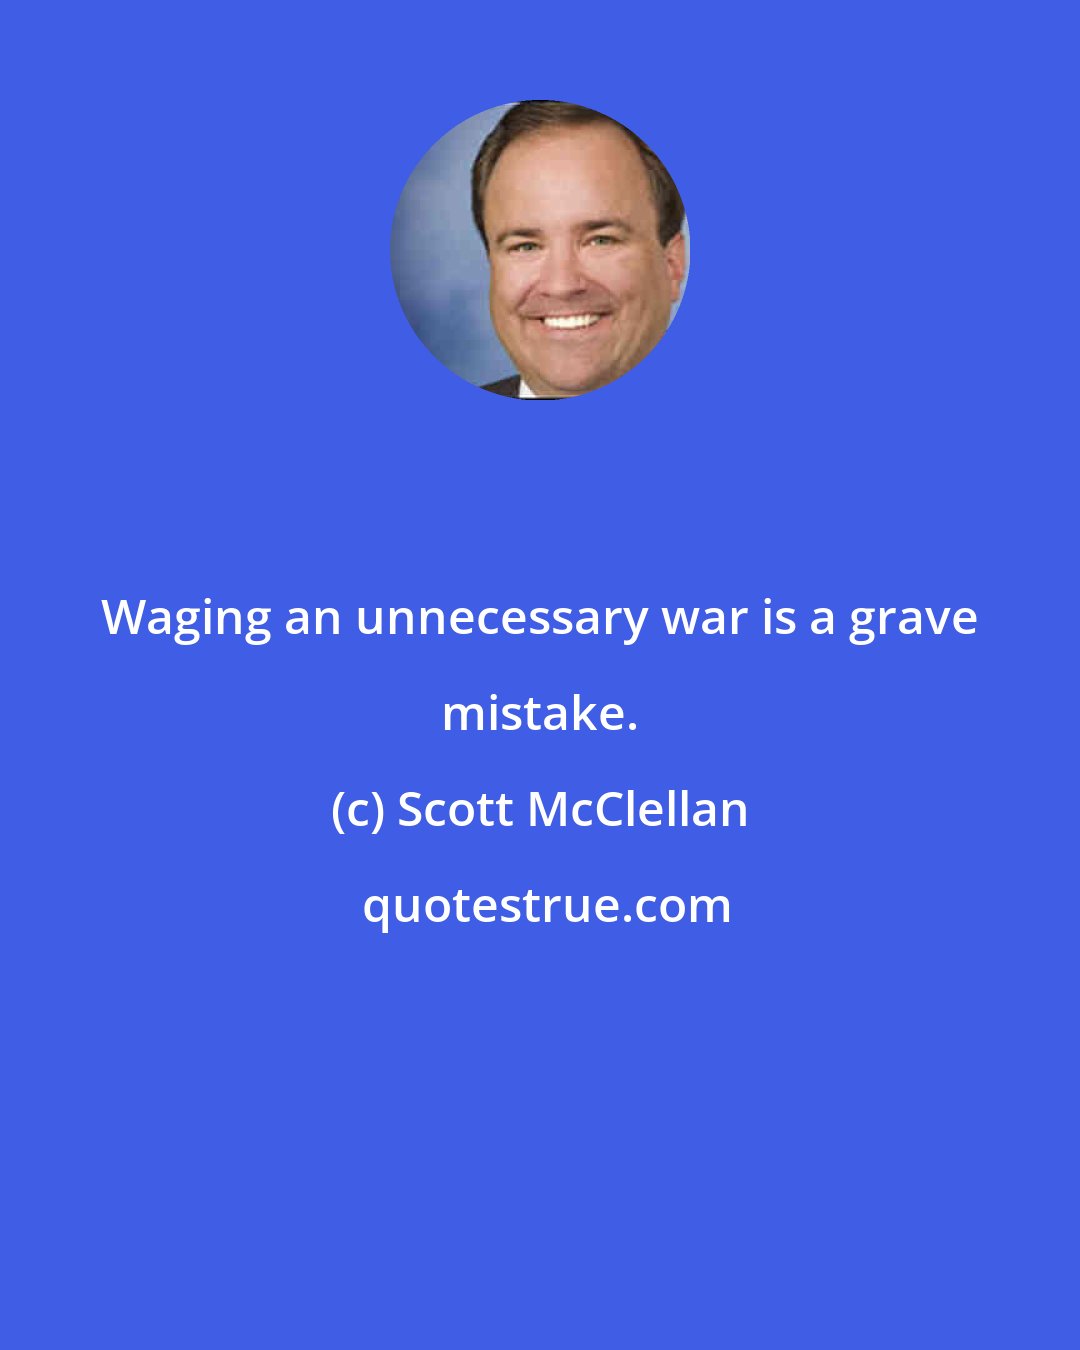 Scott McClellan: Waging an unnecessary war is a grave mistake.